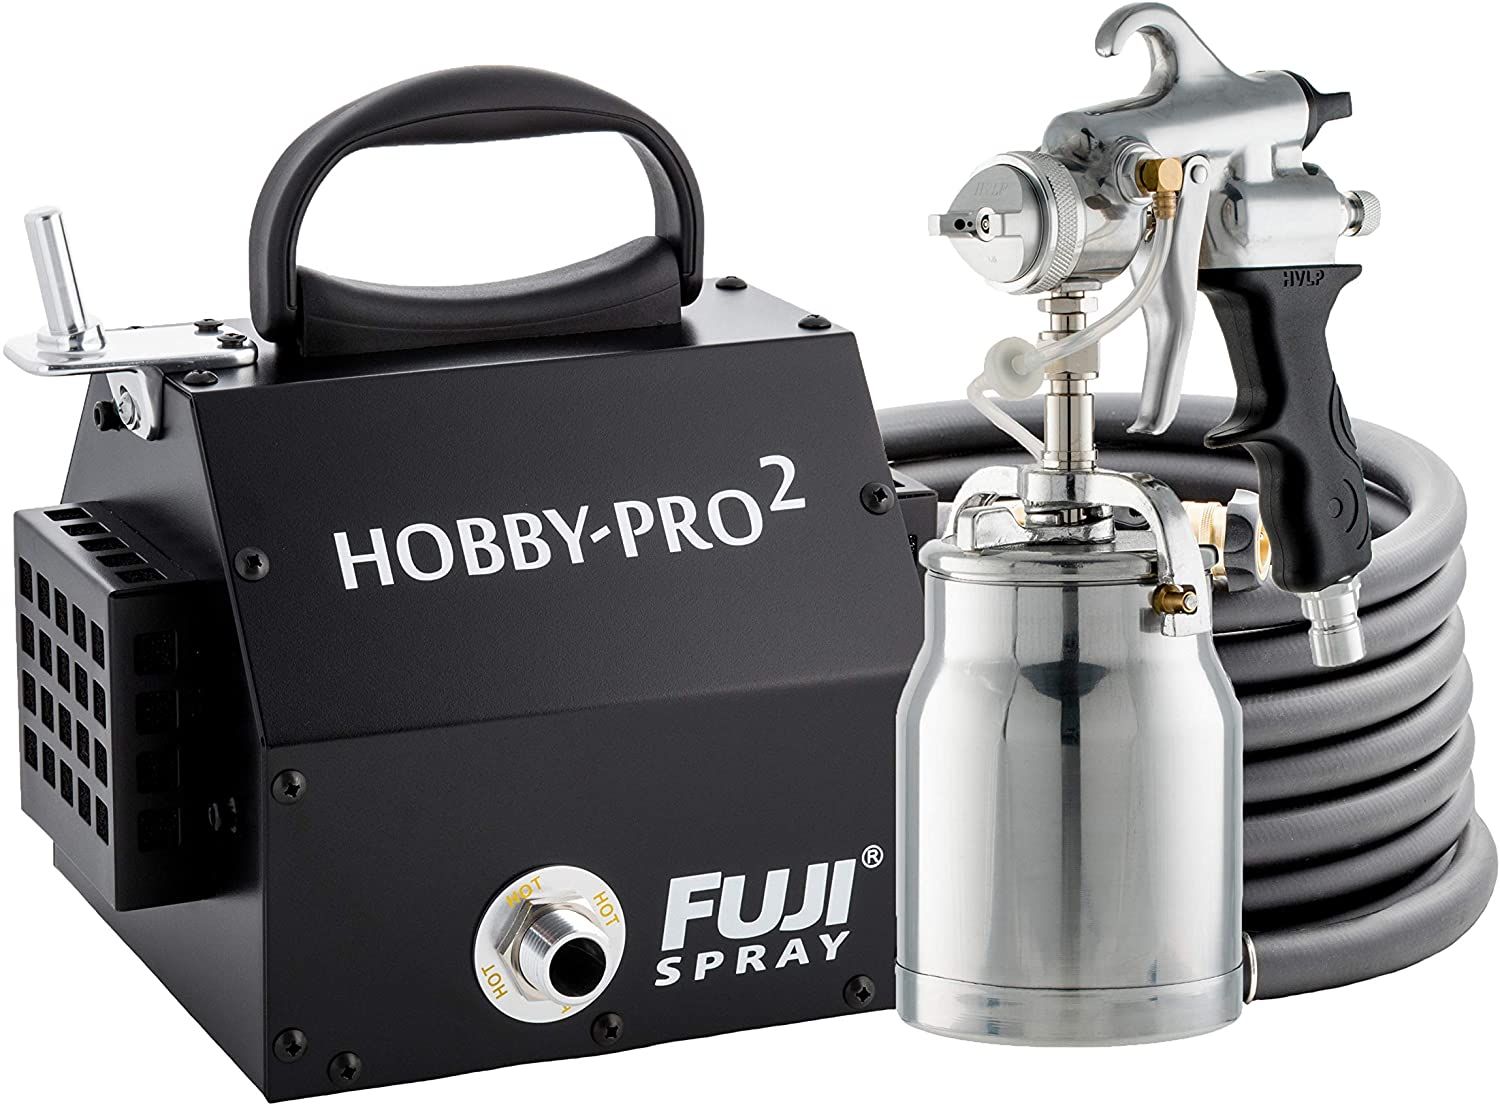 Fuji Hobby-Pro 2 HVLP Spray System